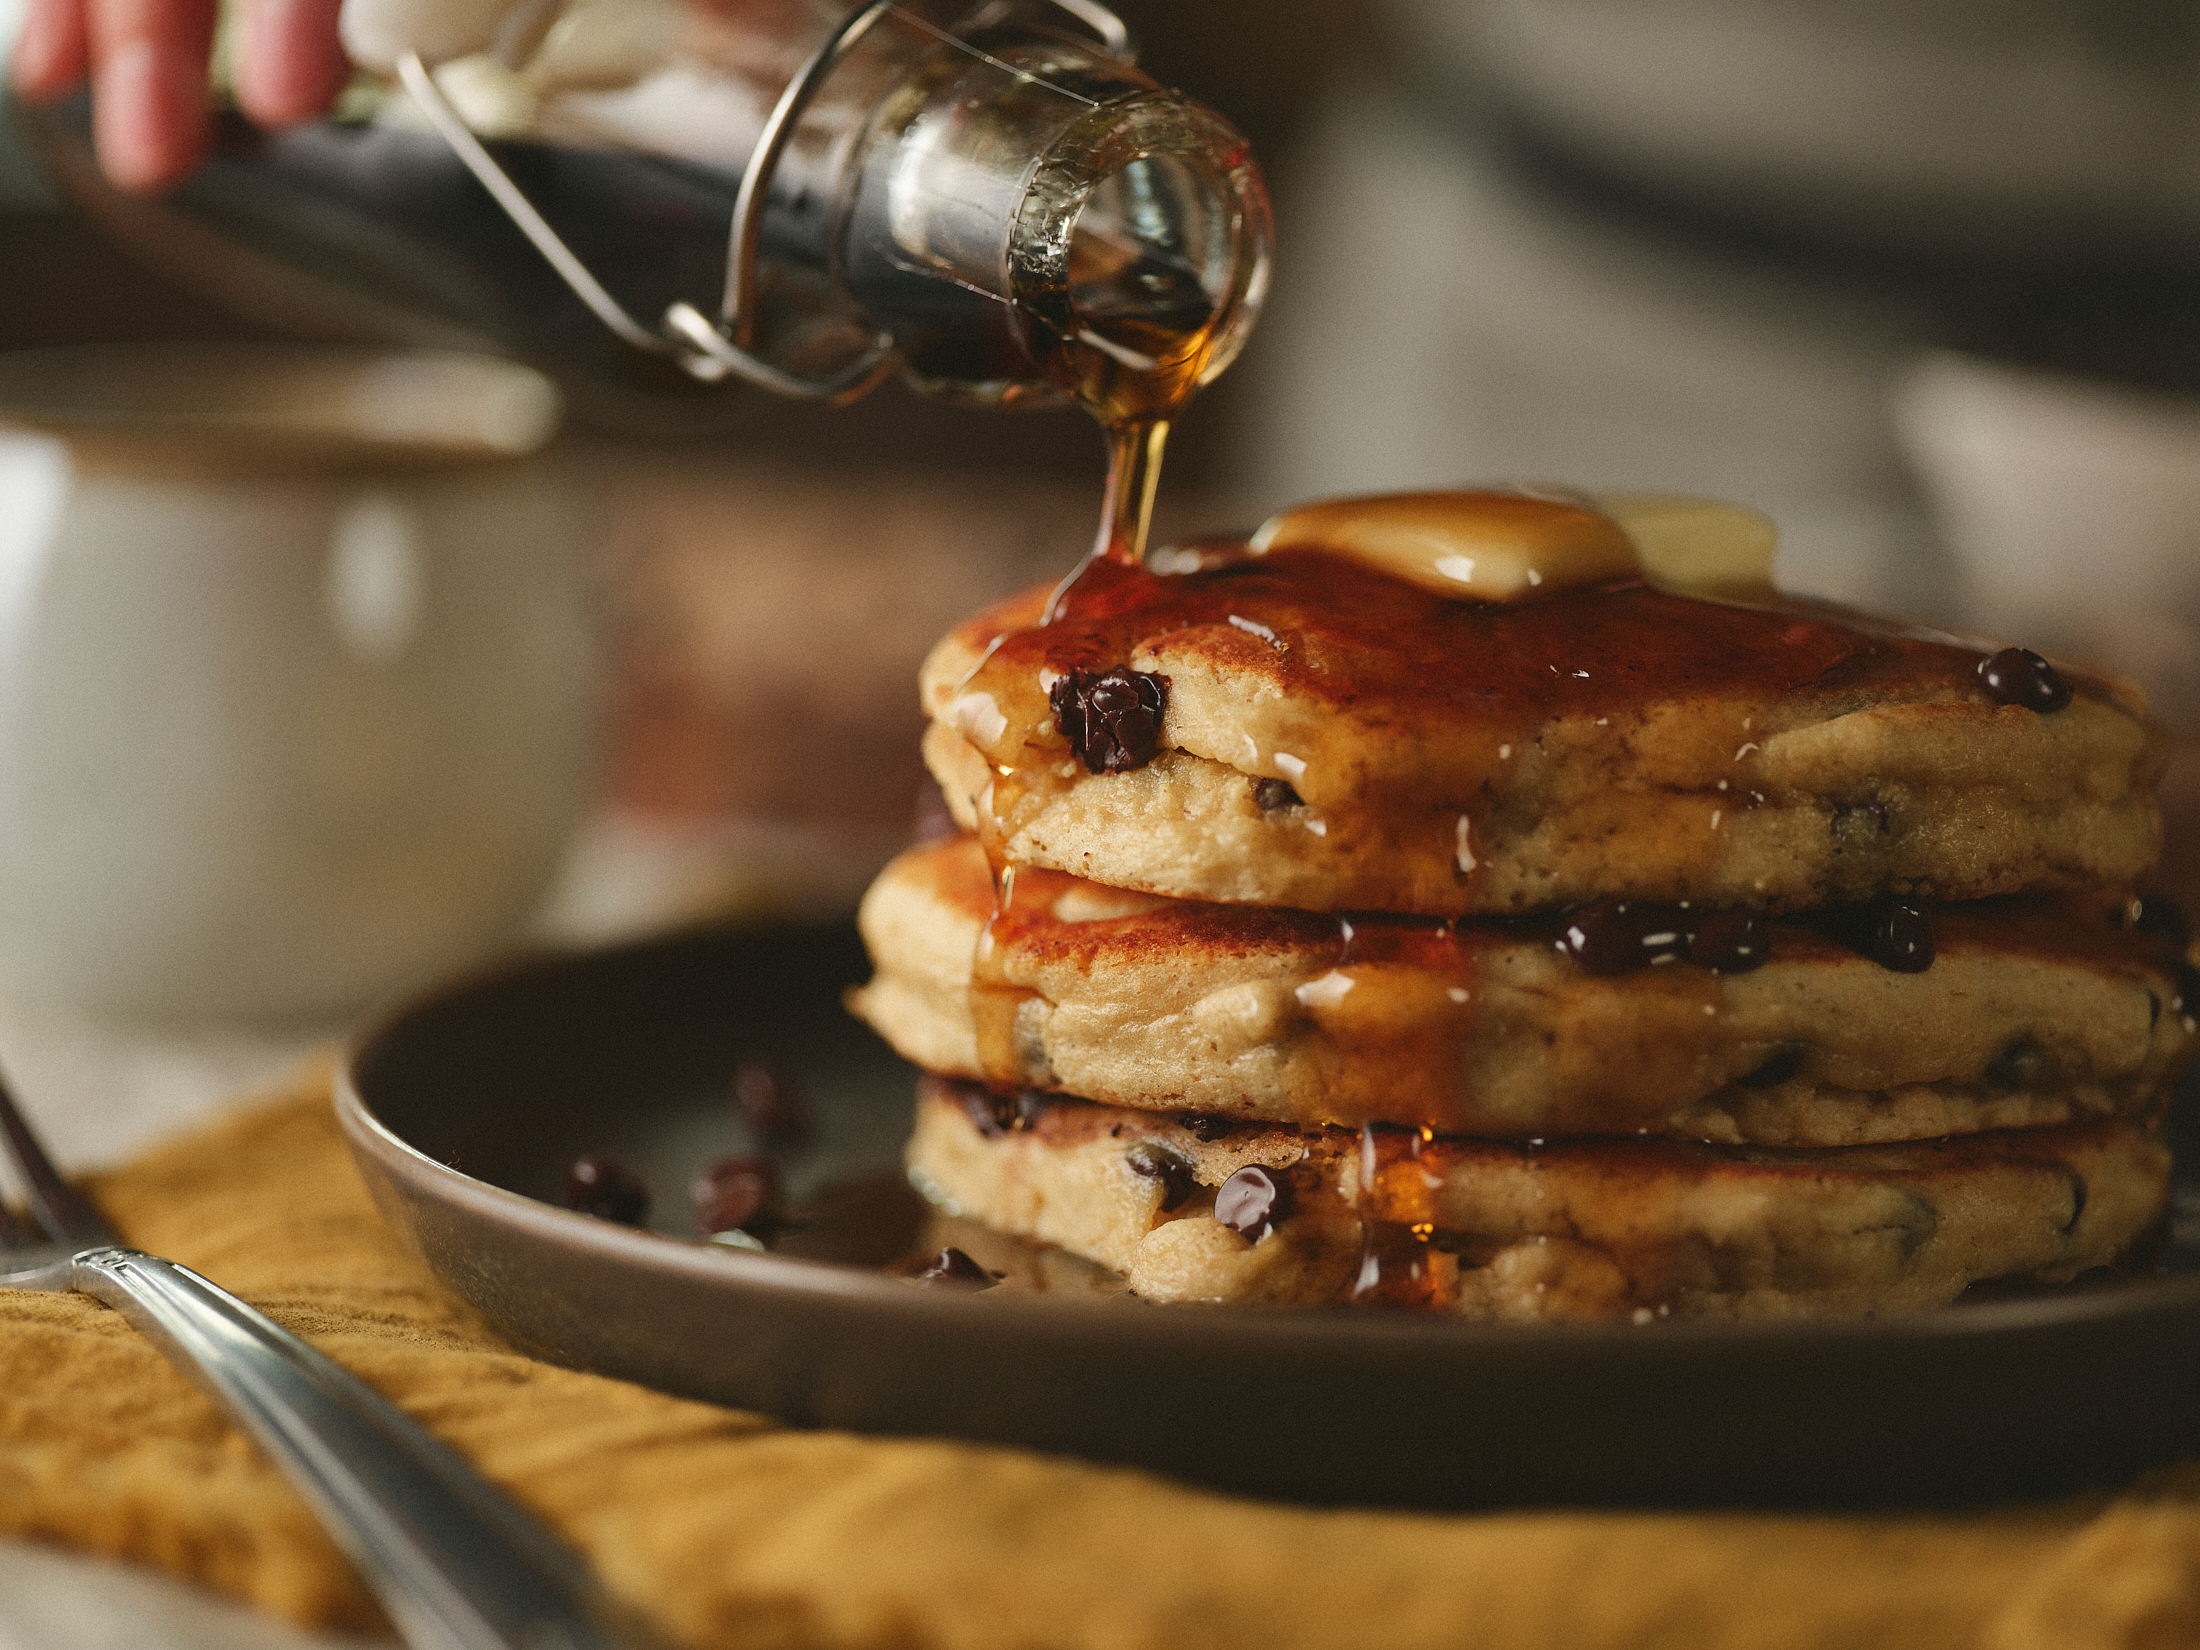 Kodiak Cakes with syrup poring onto pancakes 